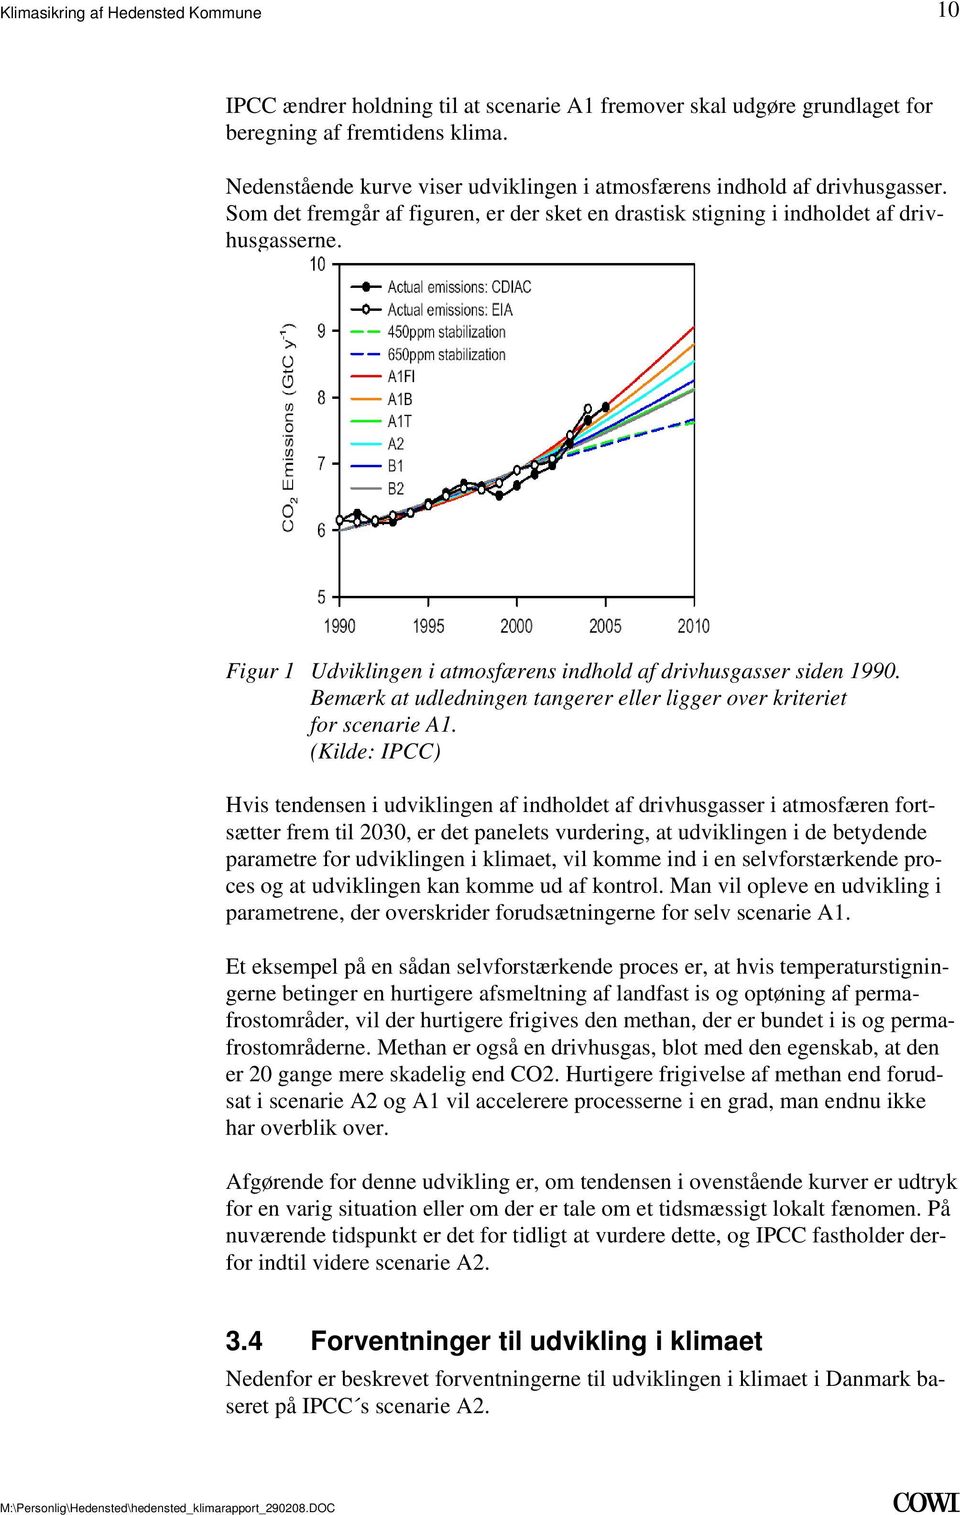 Figur 1 Udviklingen i atmosfærens indhold af drivhusgasser siden 1990. Bemærk at udledningen tangerer eller ligger over kriteriet for scenarie A1.